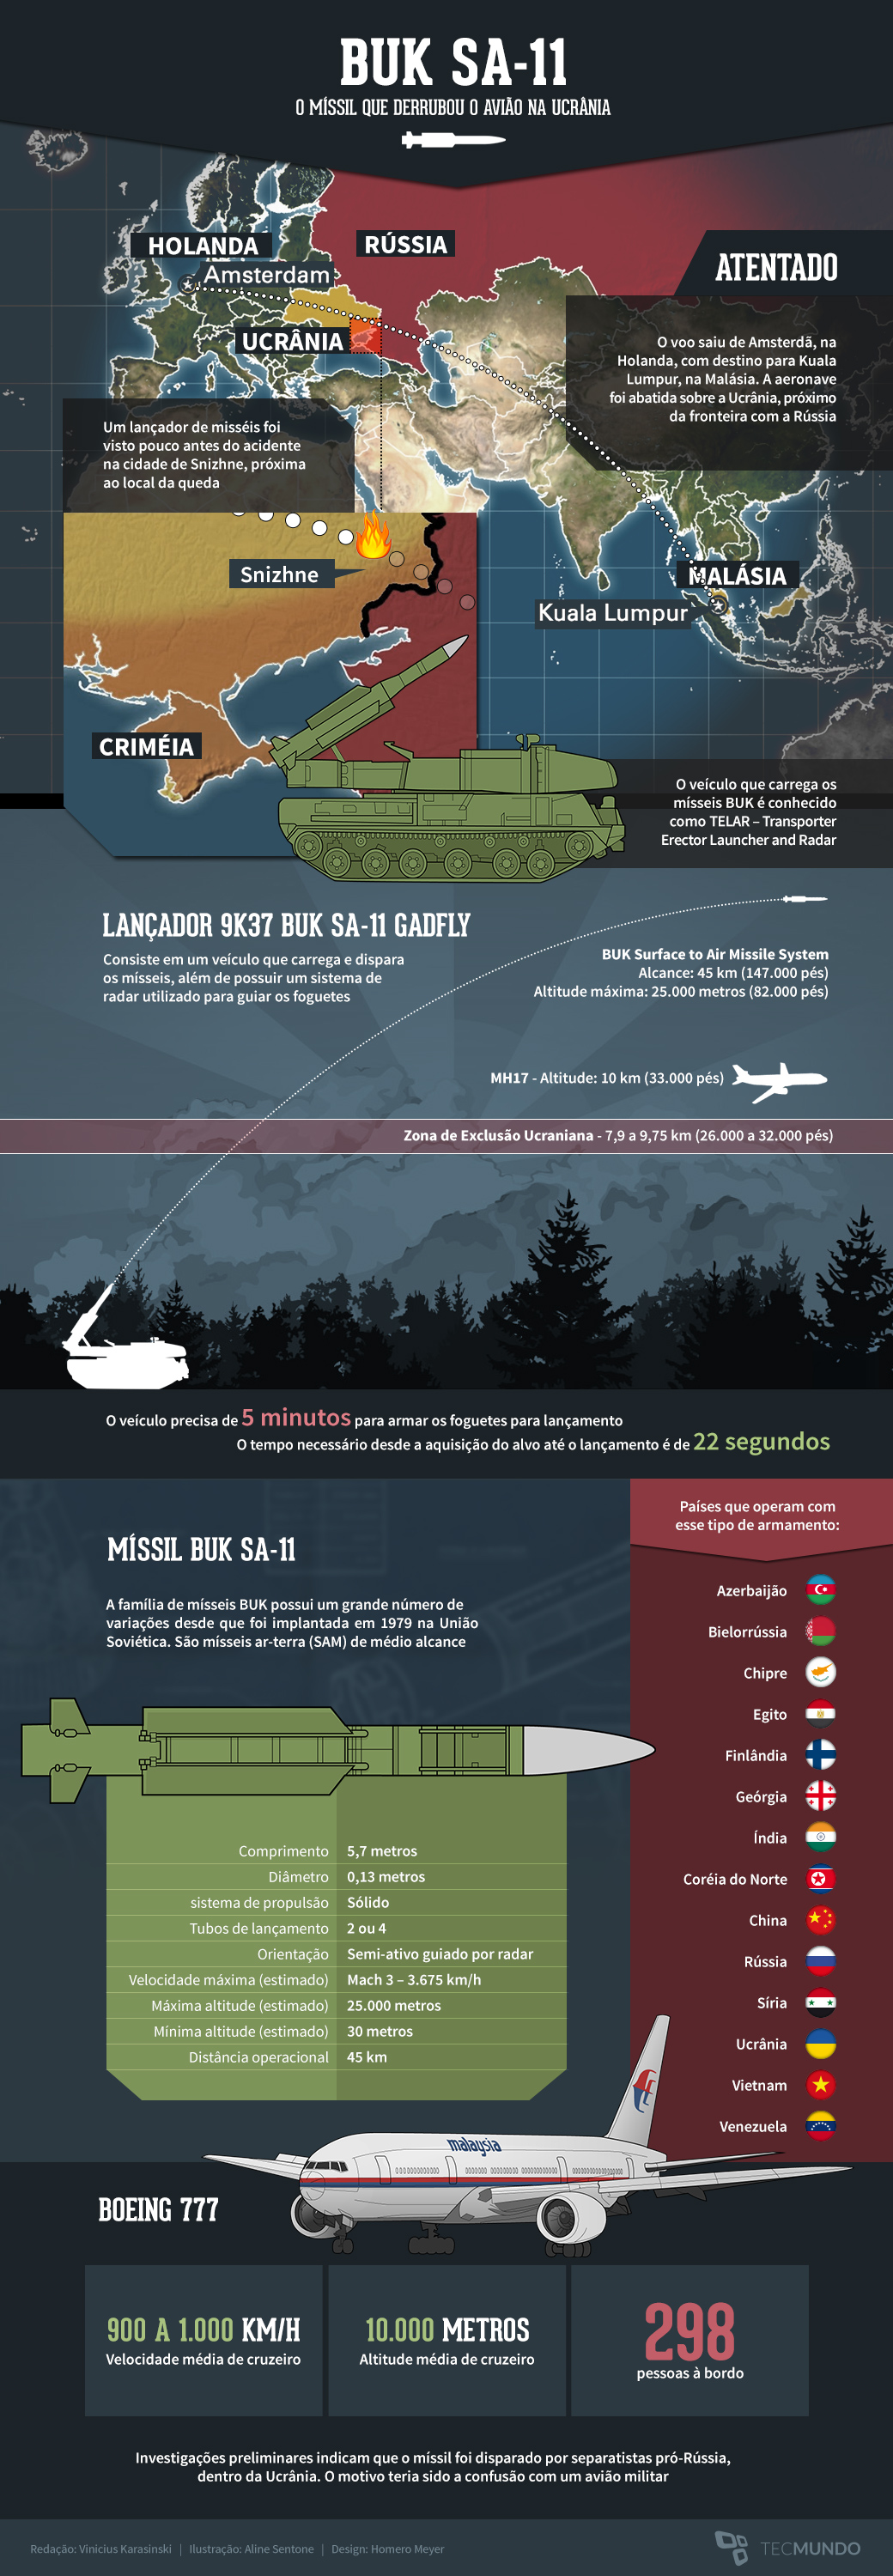 Como funciona o míssil SAM que derrubou um avião na Ucrânia [infográfico]